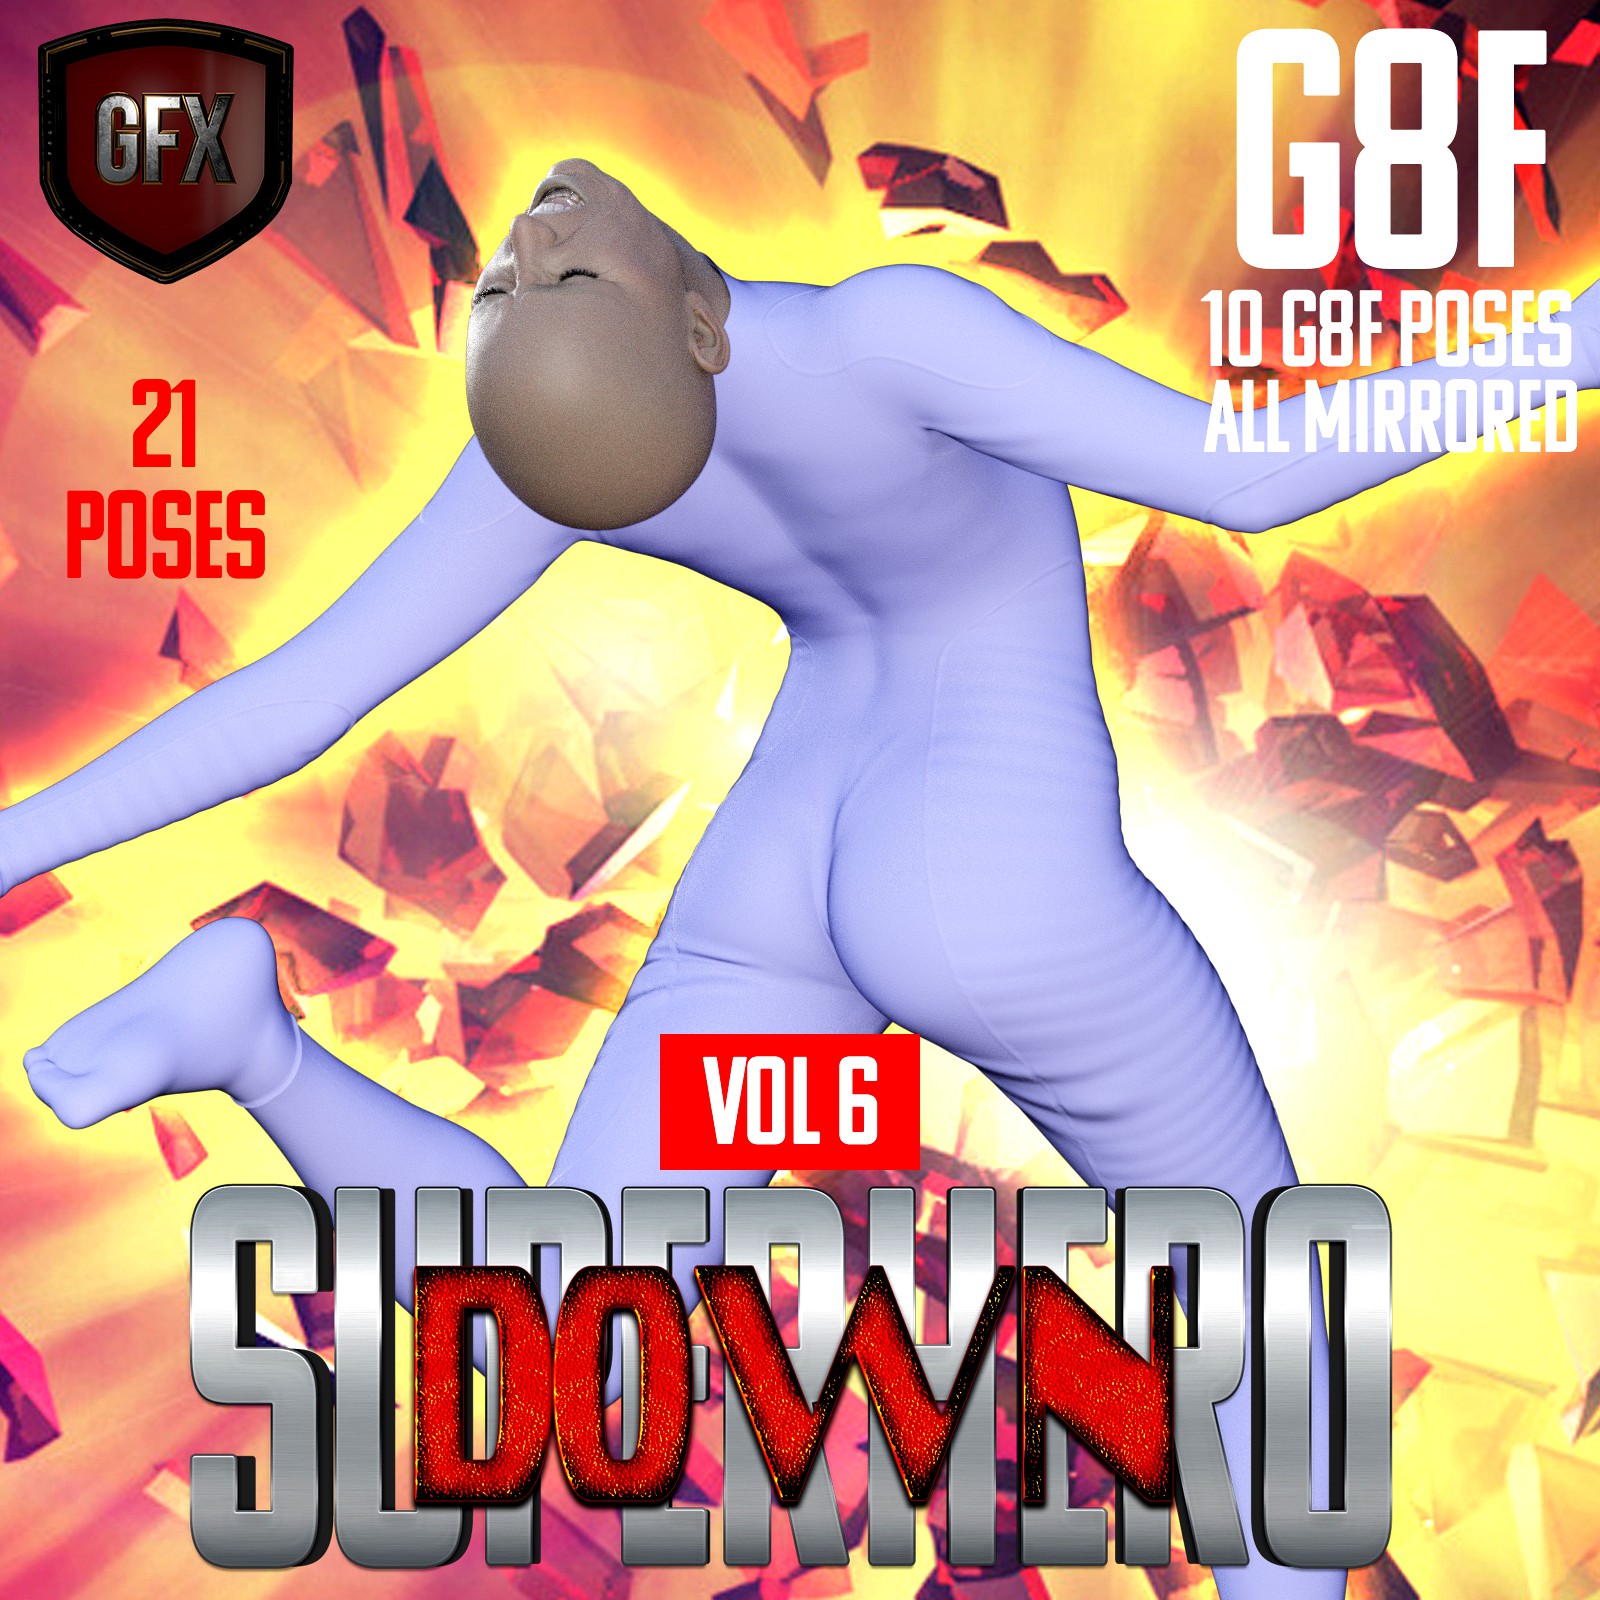 SuperHero Down for G8F Volume 6